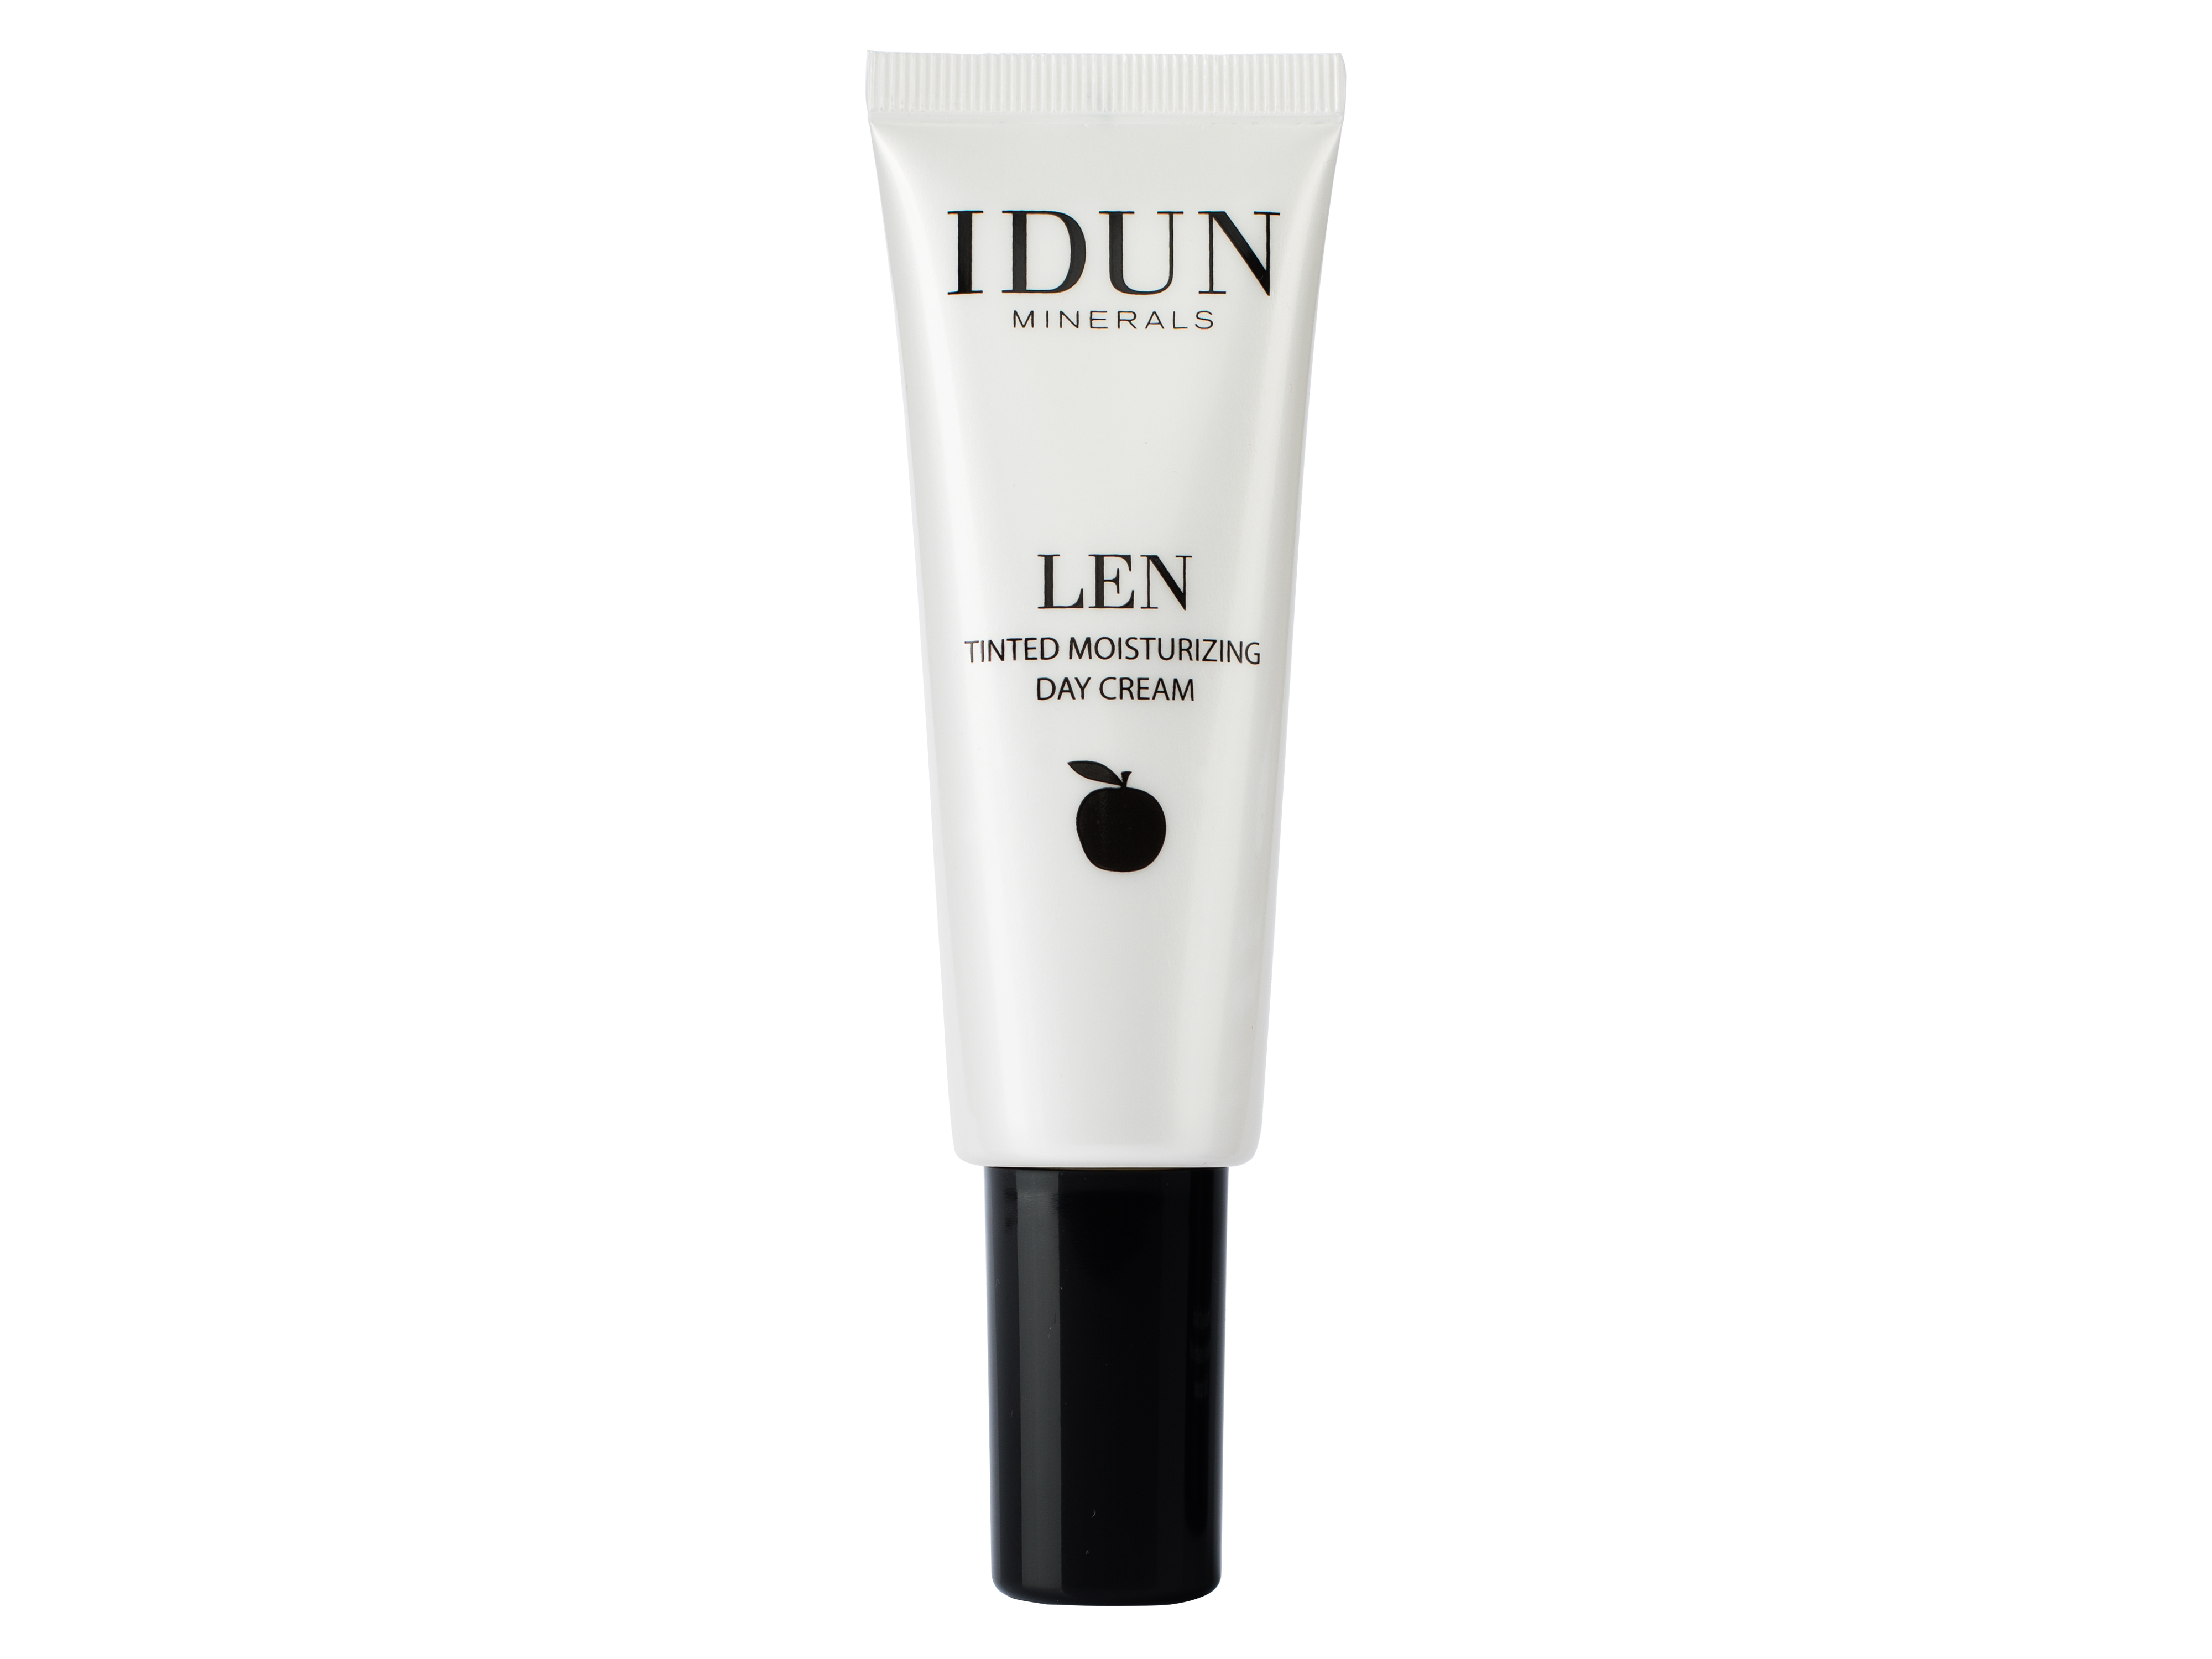 IDUN Minerals IDUNMinerals LEN Tinted Day Cream Extra Light, 50 ml